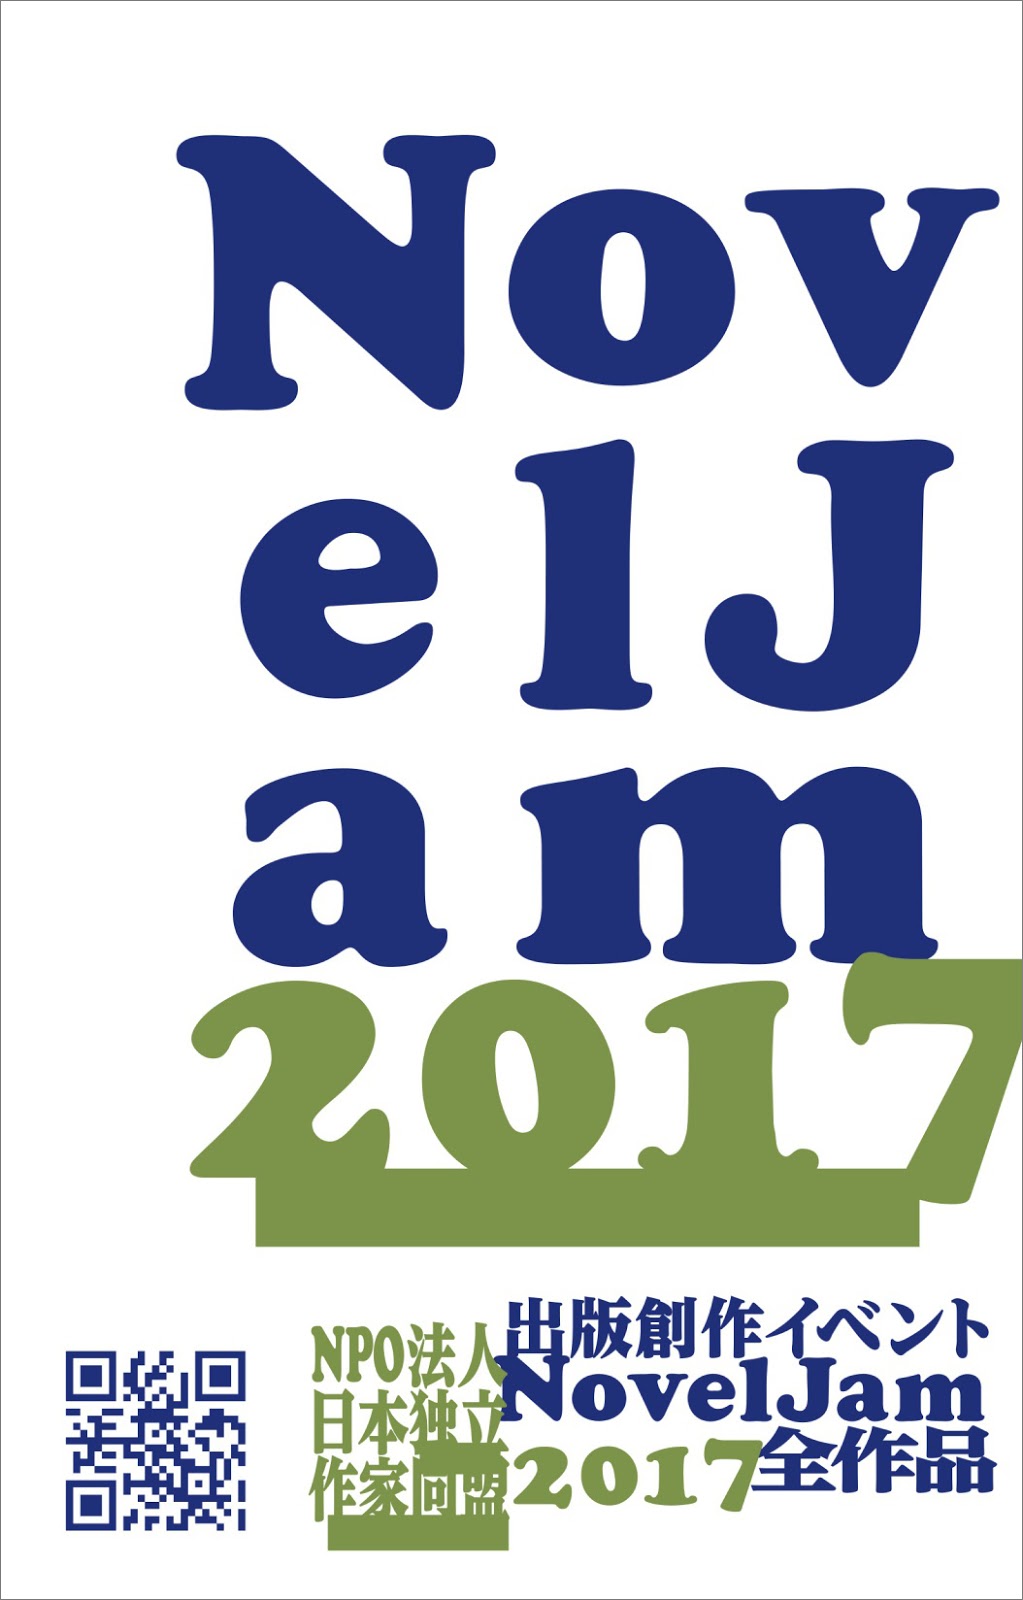 出版創作イベント「NovelJam 2017」全作品〈群雛NovelJam〉